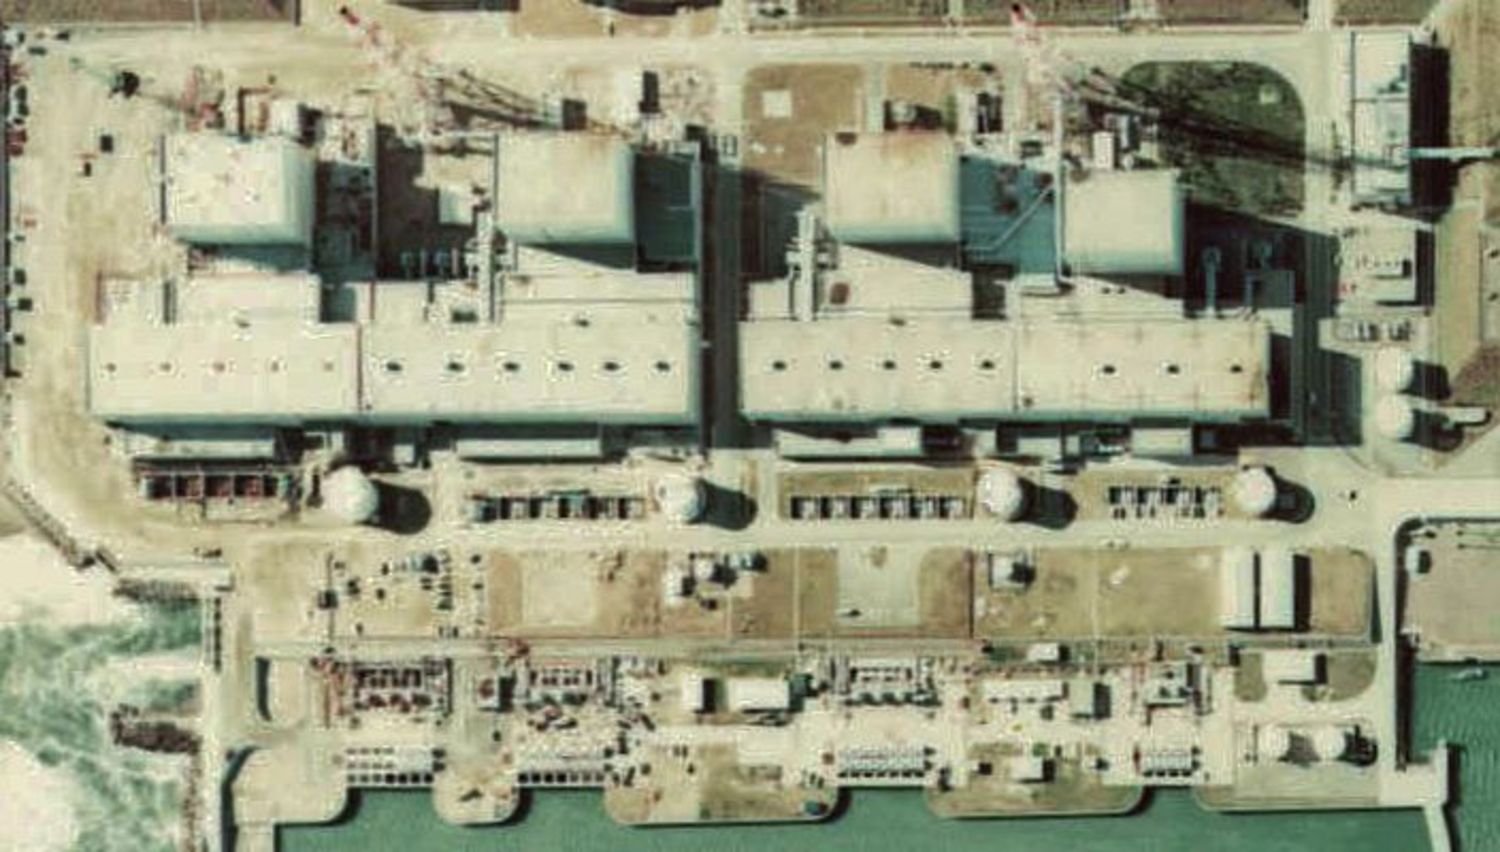 福岛第一核电站。紧扣显示反应堆4,3,2和1，读数从左(南)到右(北)。所示面积约为600米乘350米。根据[http://w3land.mlit.go.jp/WebGIS/国家土地图像信息(彩色…